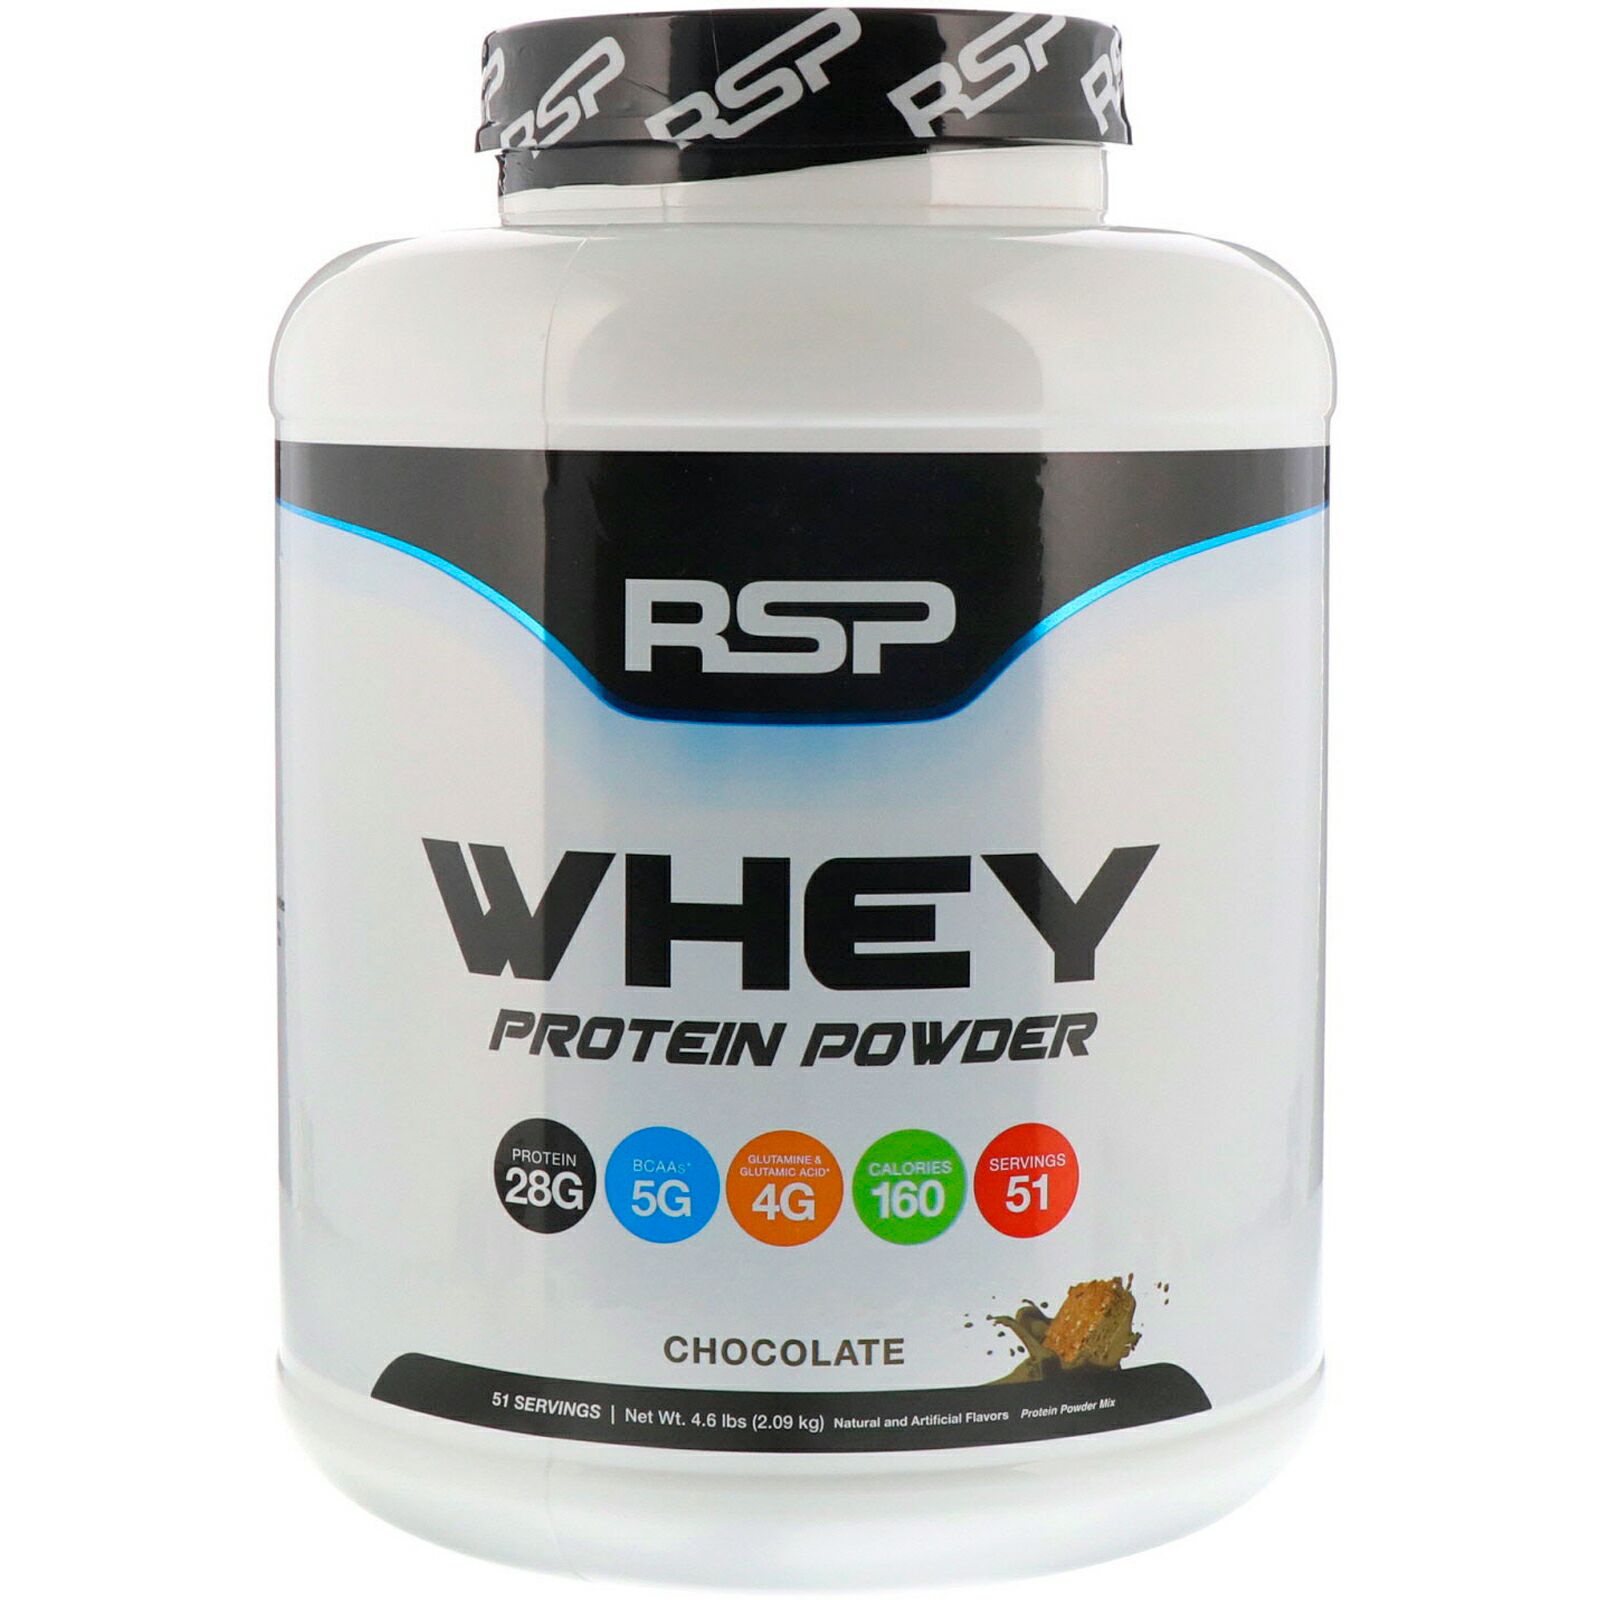 Протеин в косметике. RSP Nutrition протеин. RSP Whey протеин. Протеин ваниль. Syrex Nutrition сывороточный протеин.